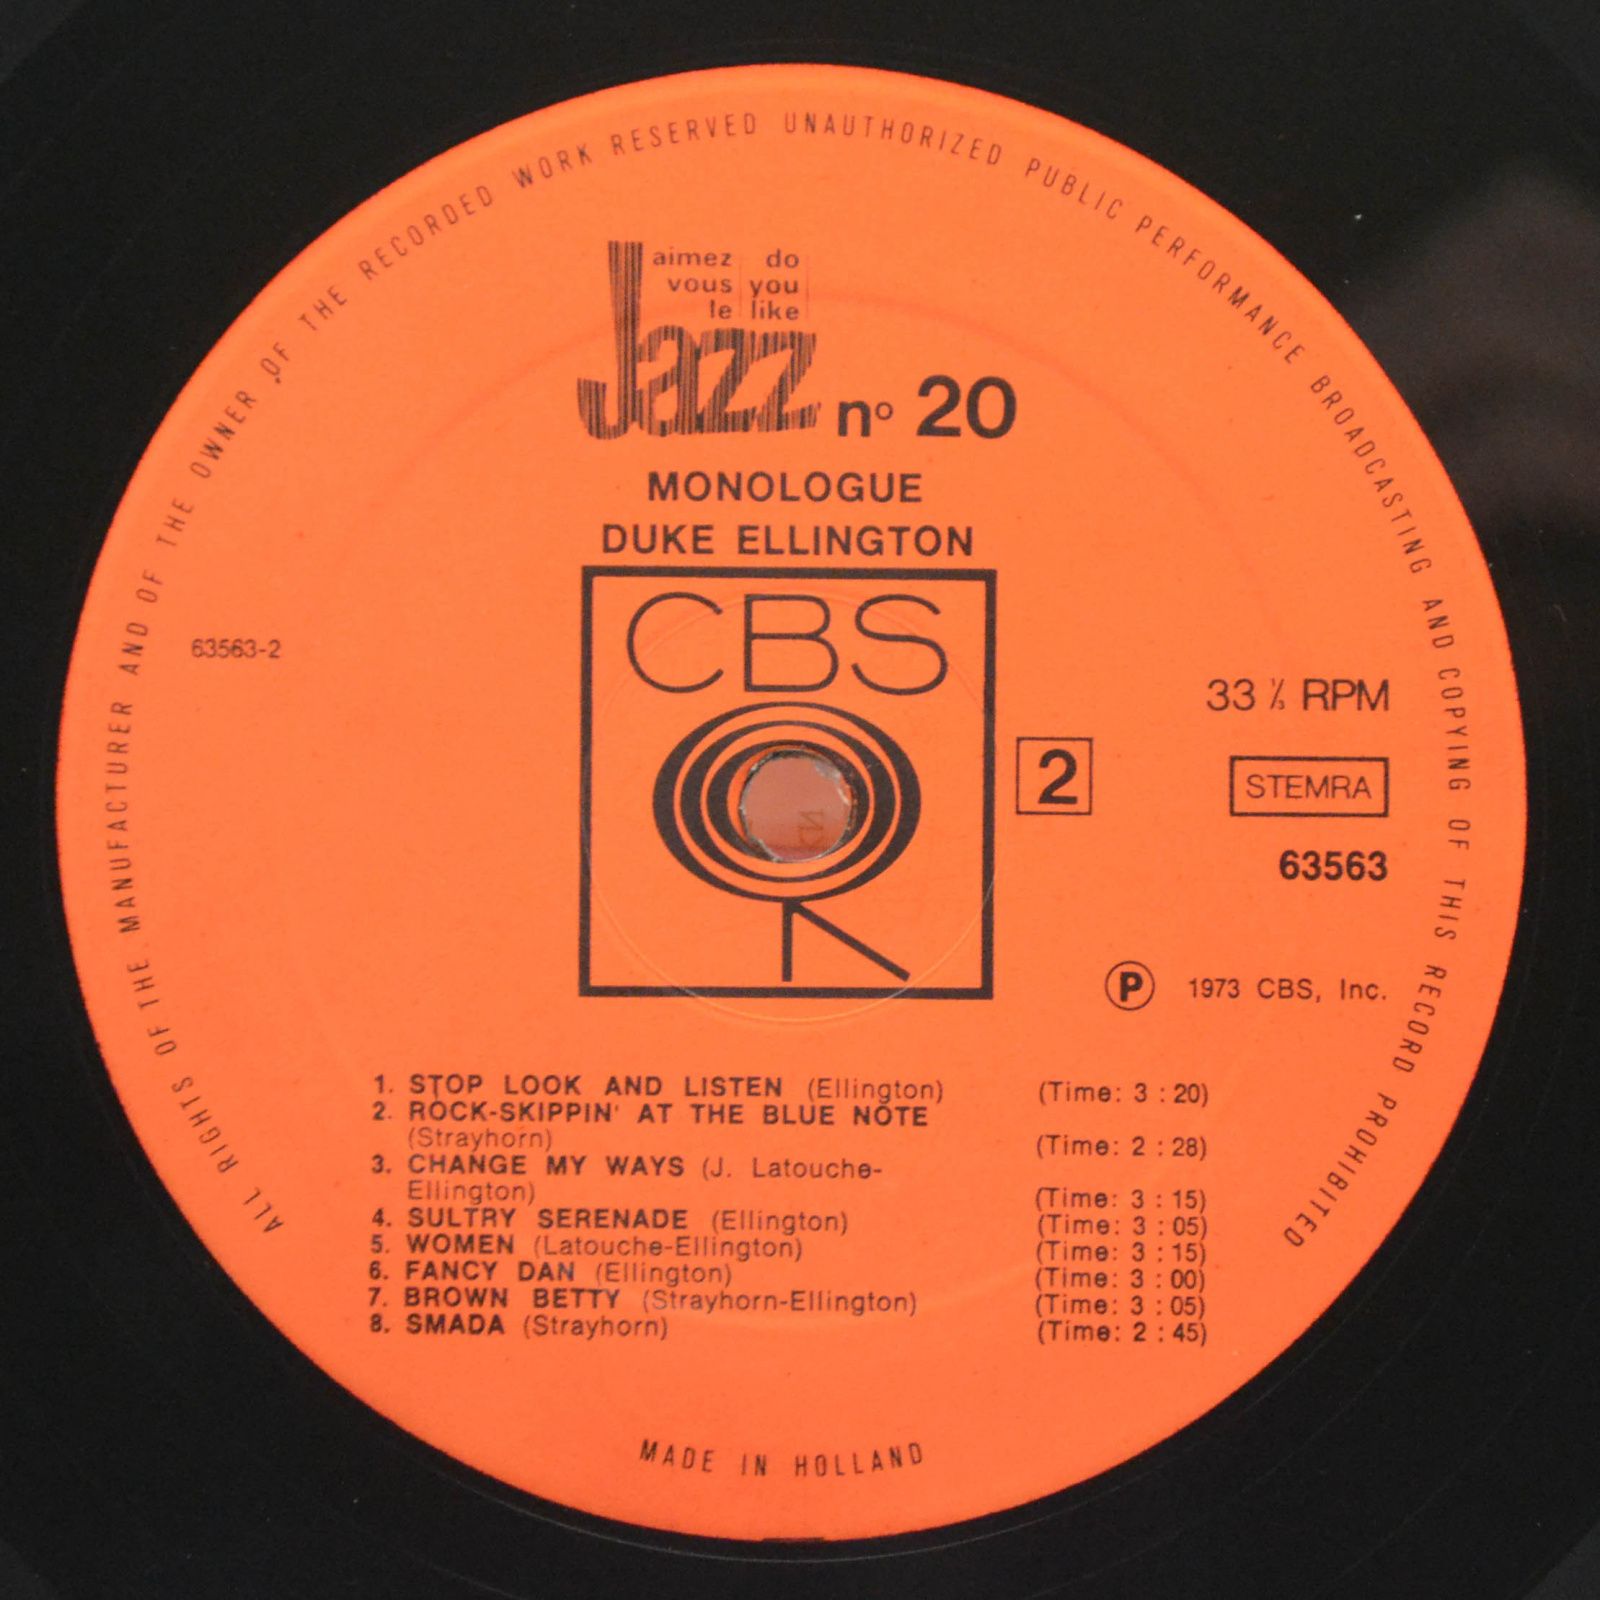 Duke Ellington — Monologue, 1973